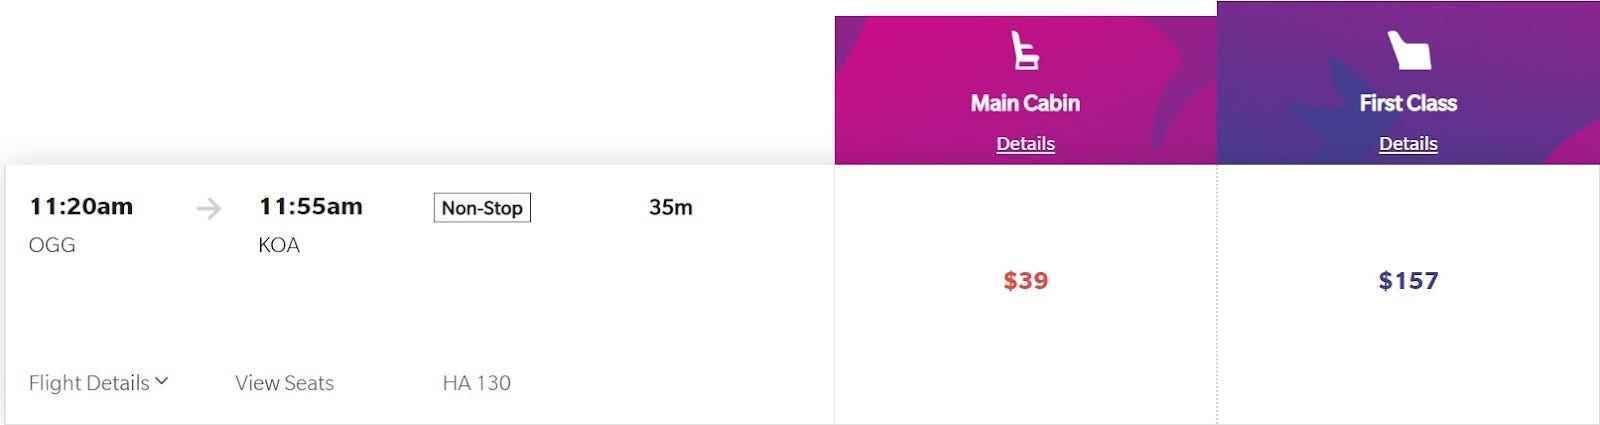 Screenshot der bezahlten Flugkosten zwischen den Inseln mit Hawaiian Airlines mit einem Tarif von 39 $ in der Economy und 157 $ in der First Class.